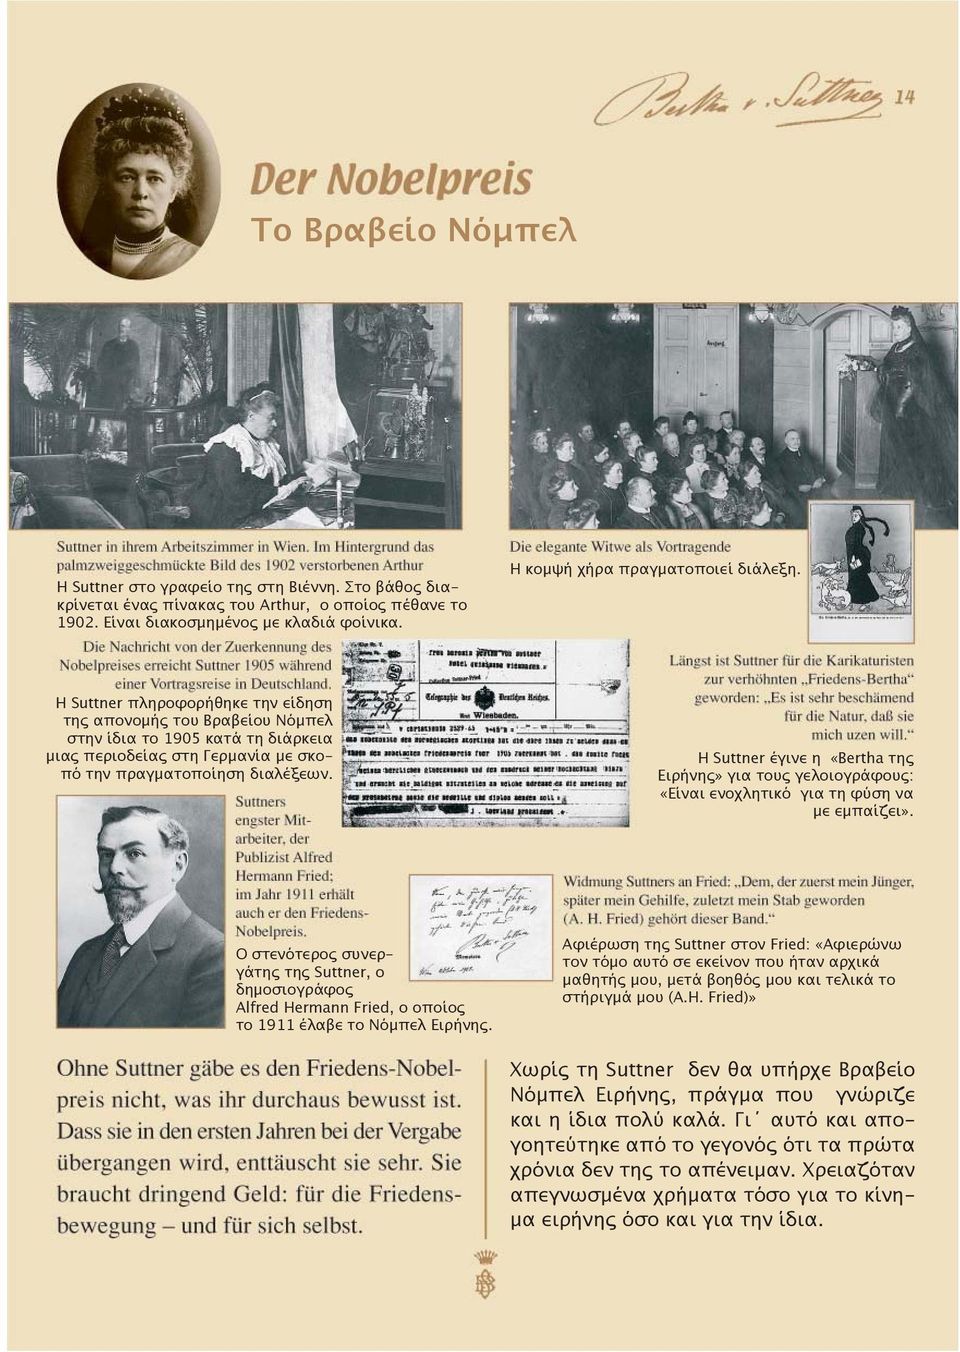 Η Suttner πληροφορήθηκε την είδηση της απονομής του Βραβείου Νόμπελ στην ίδια το 1905 κατά τη διάρκεια μιας περιοδείας στη Γερμανία με σκοπό την πραγματοποίηση διαλέξεων.